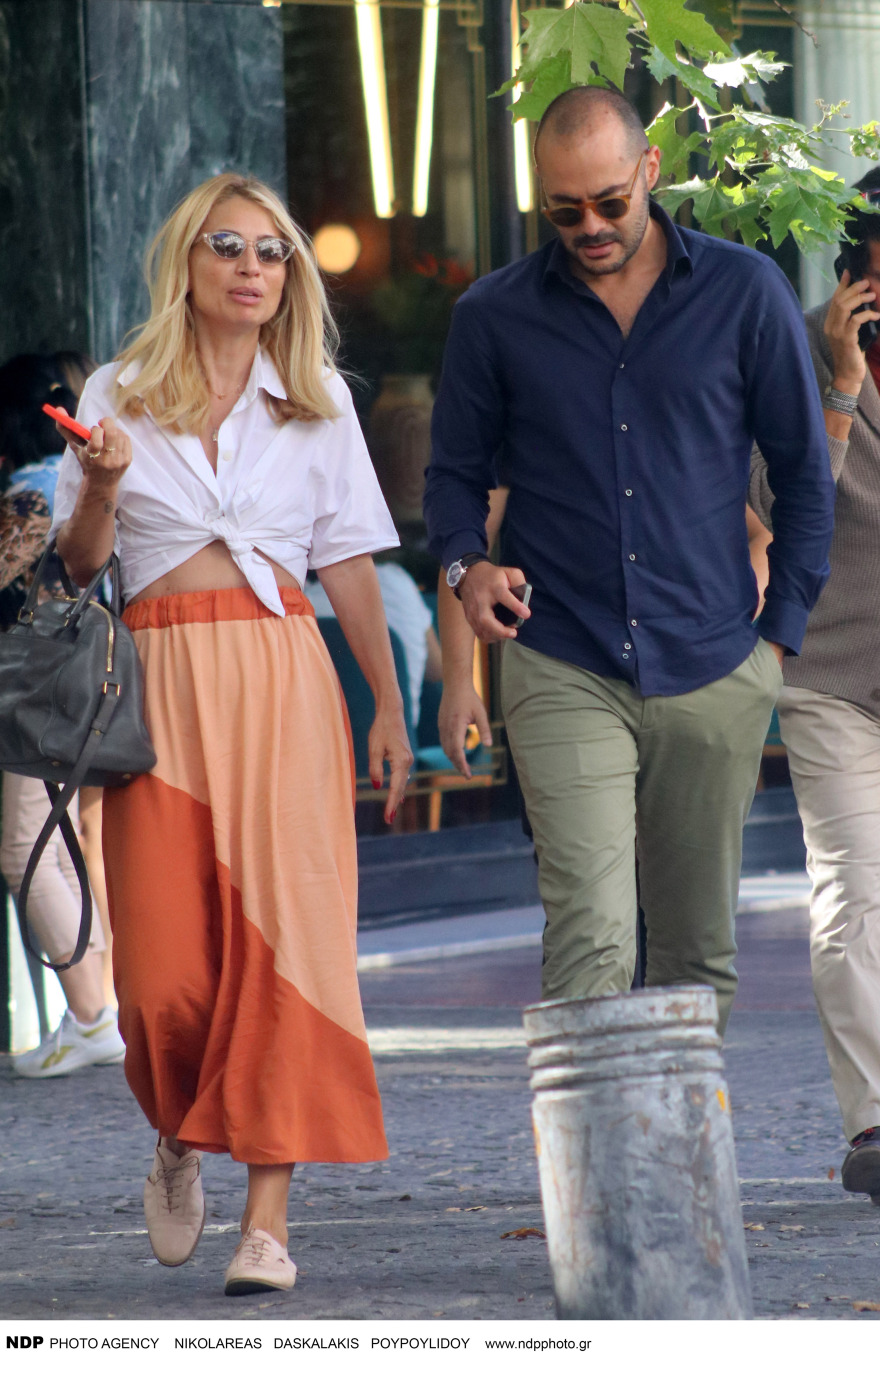 Ηλιάκη, Μαρία Ηλιάκη: Βόλτα με τον σύντροφό της στο κέντρο της Αθήνας (Φώτο)